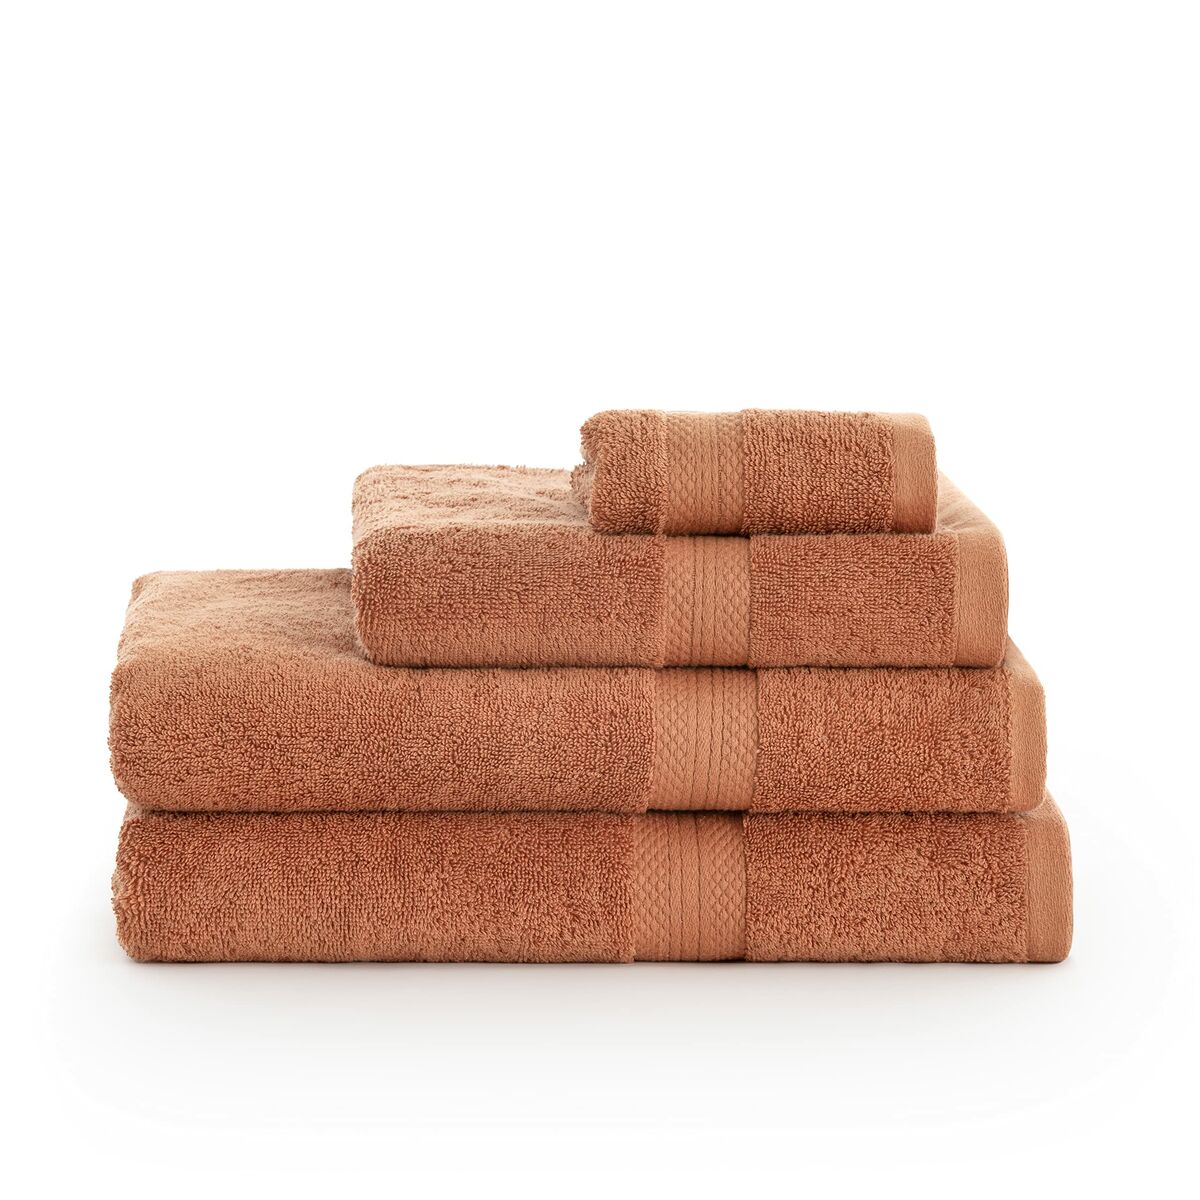 Bath towel SG Hogar Orange 50x100 cm - 2 pieces